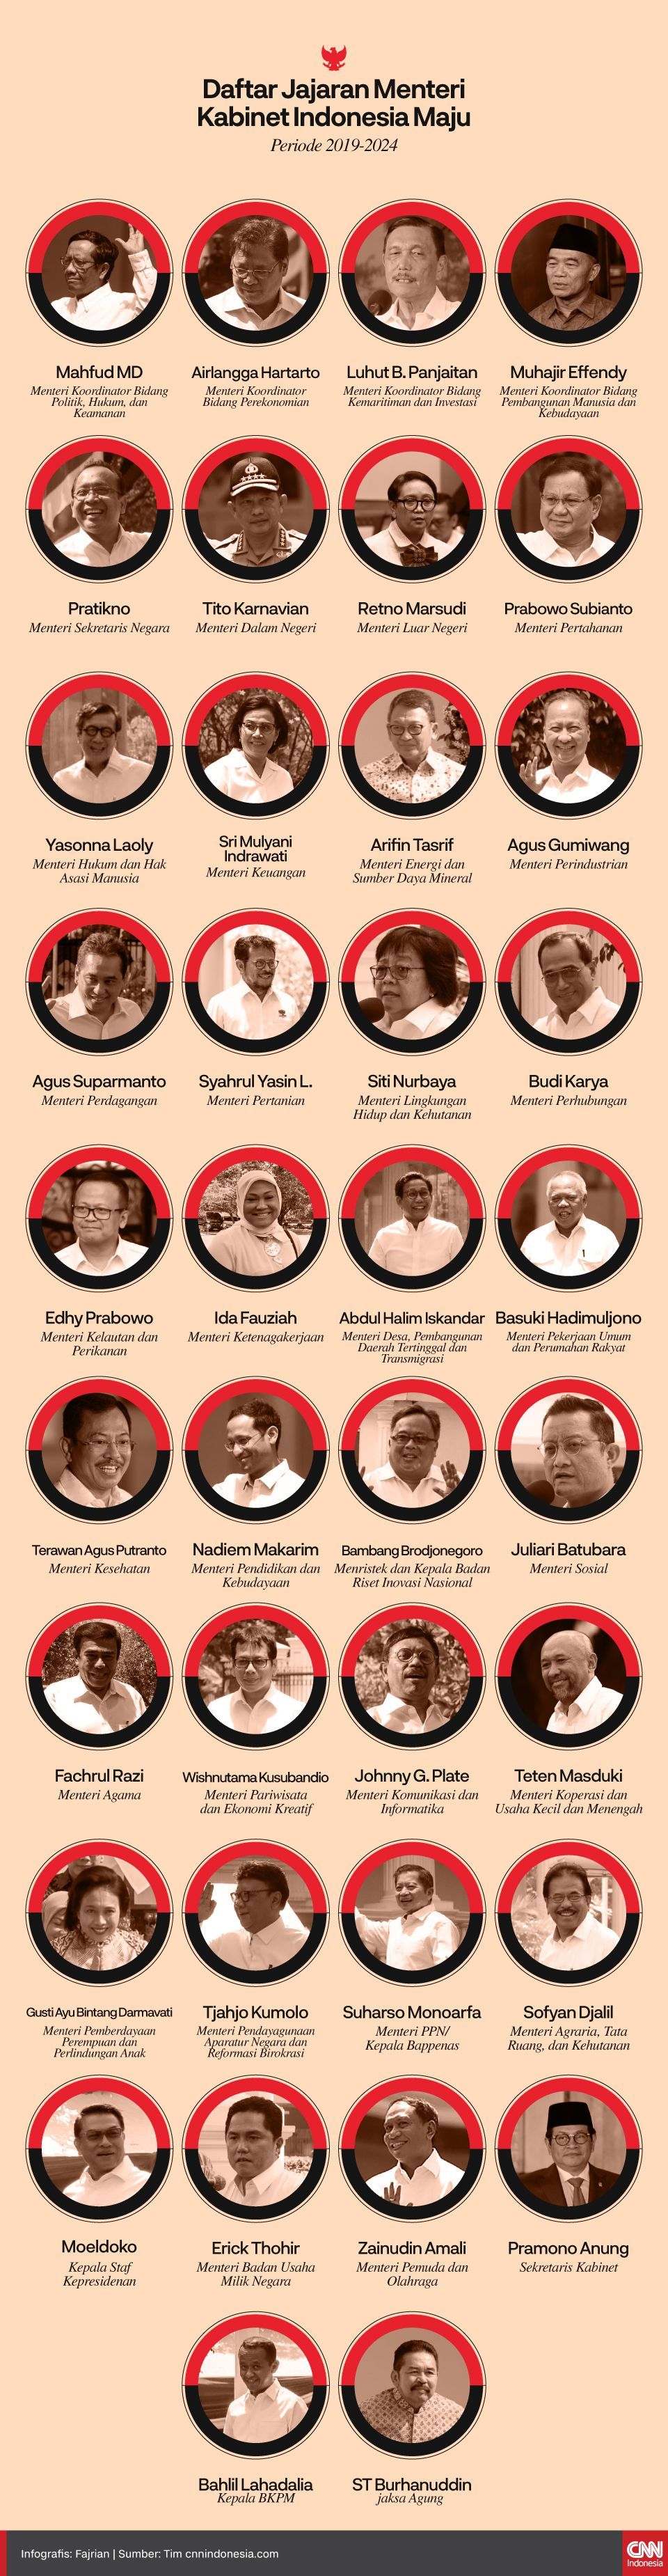 Daftar Menteri Yang Terdepak Dari Kabinet Jokowi